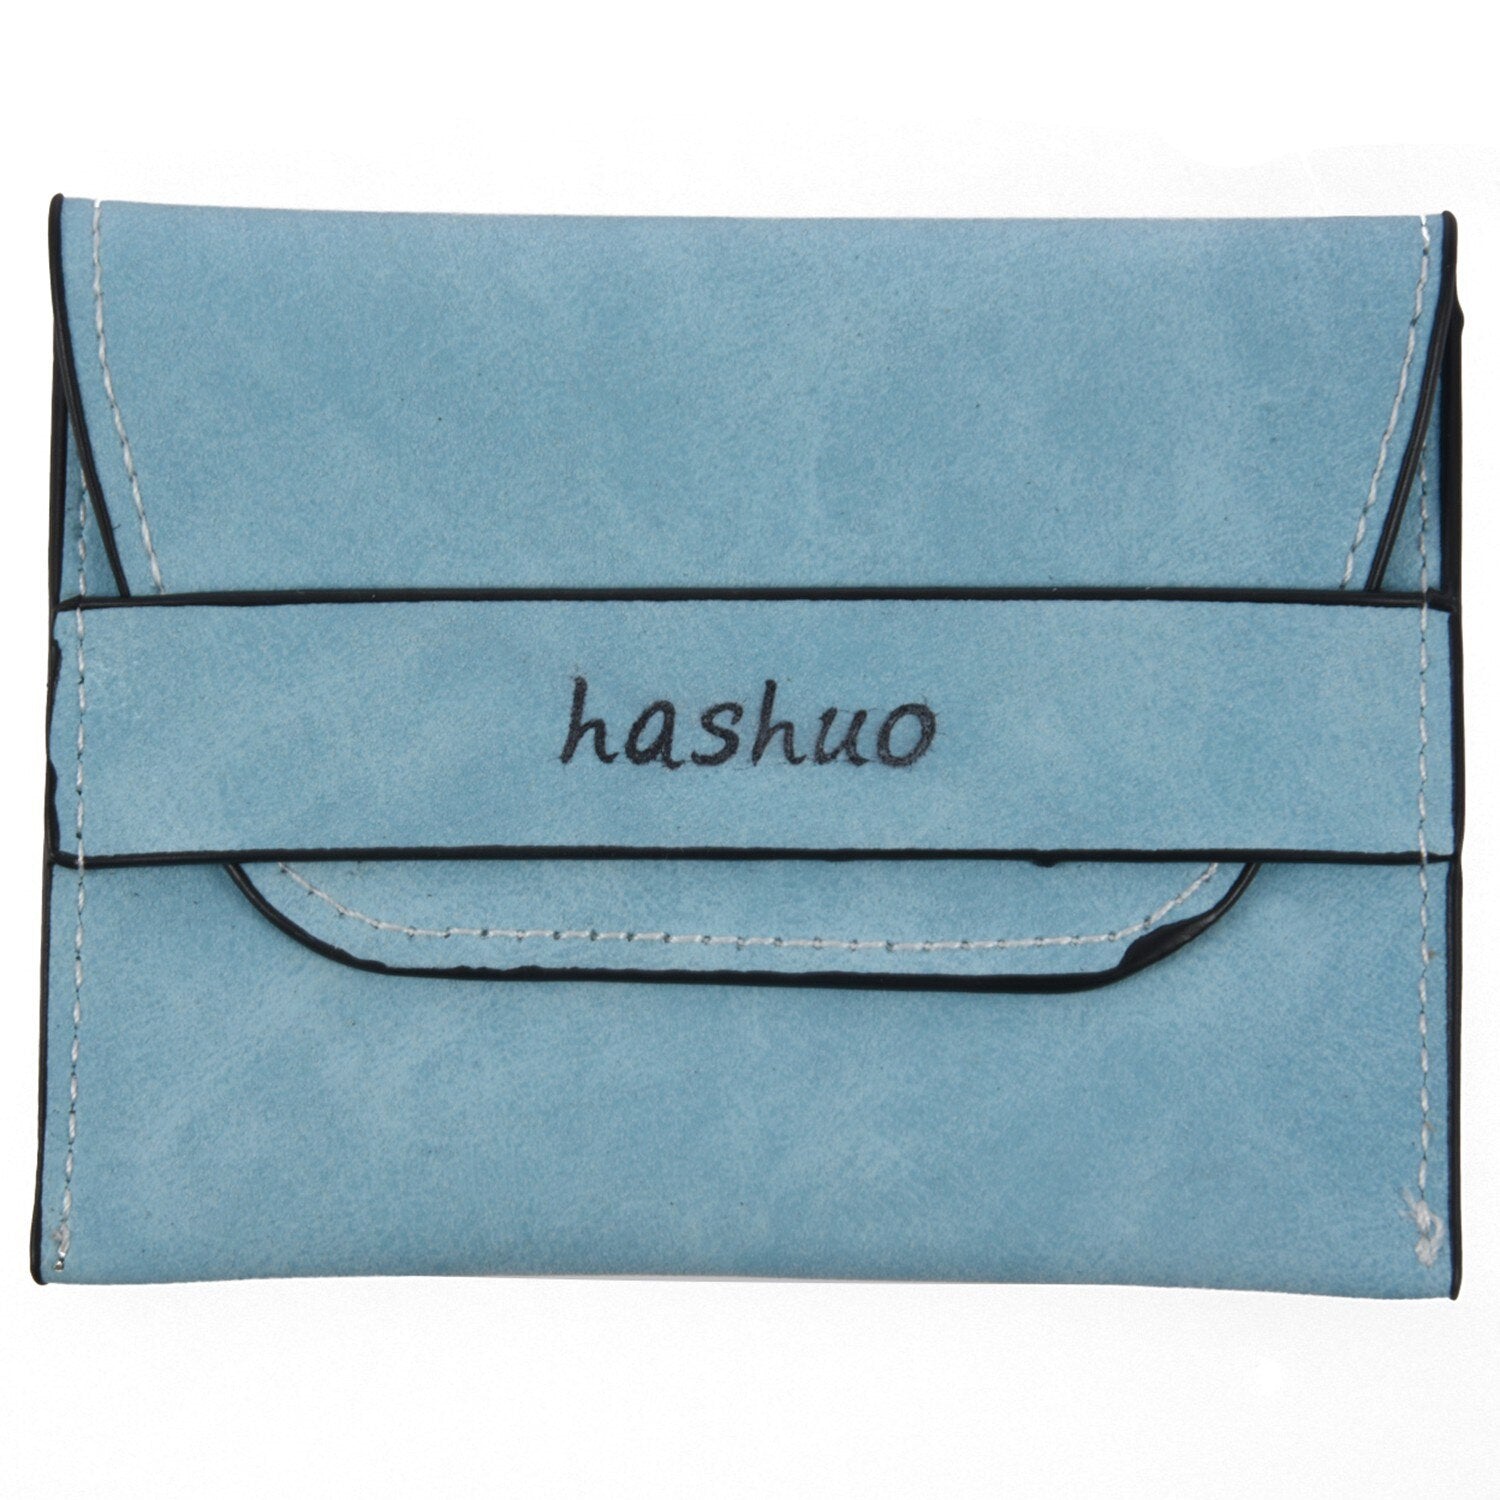 hashuo 1pcs lady short paragraph matte coin change wallet 11.5 * 9 * 0.7cm Light blue - ebowsos